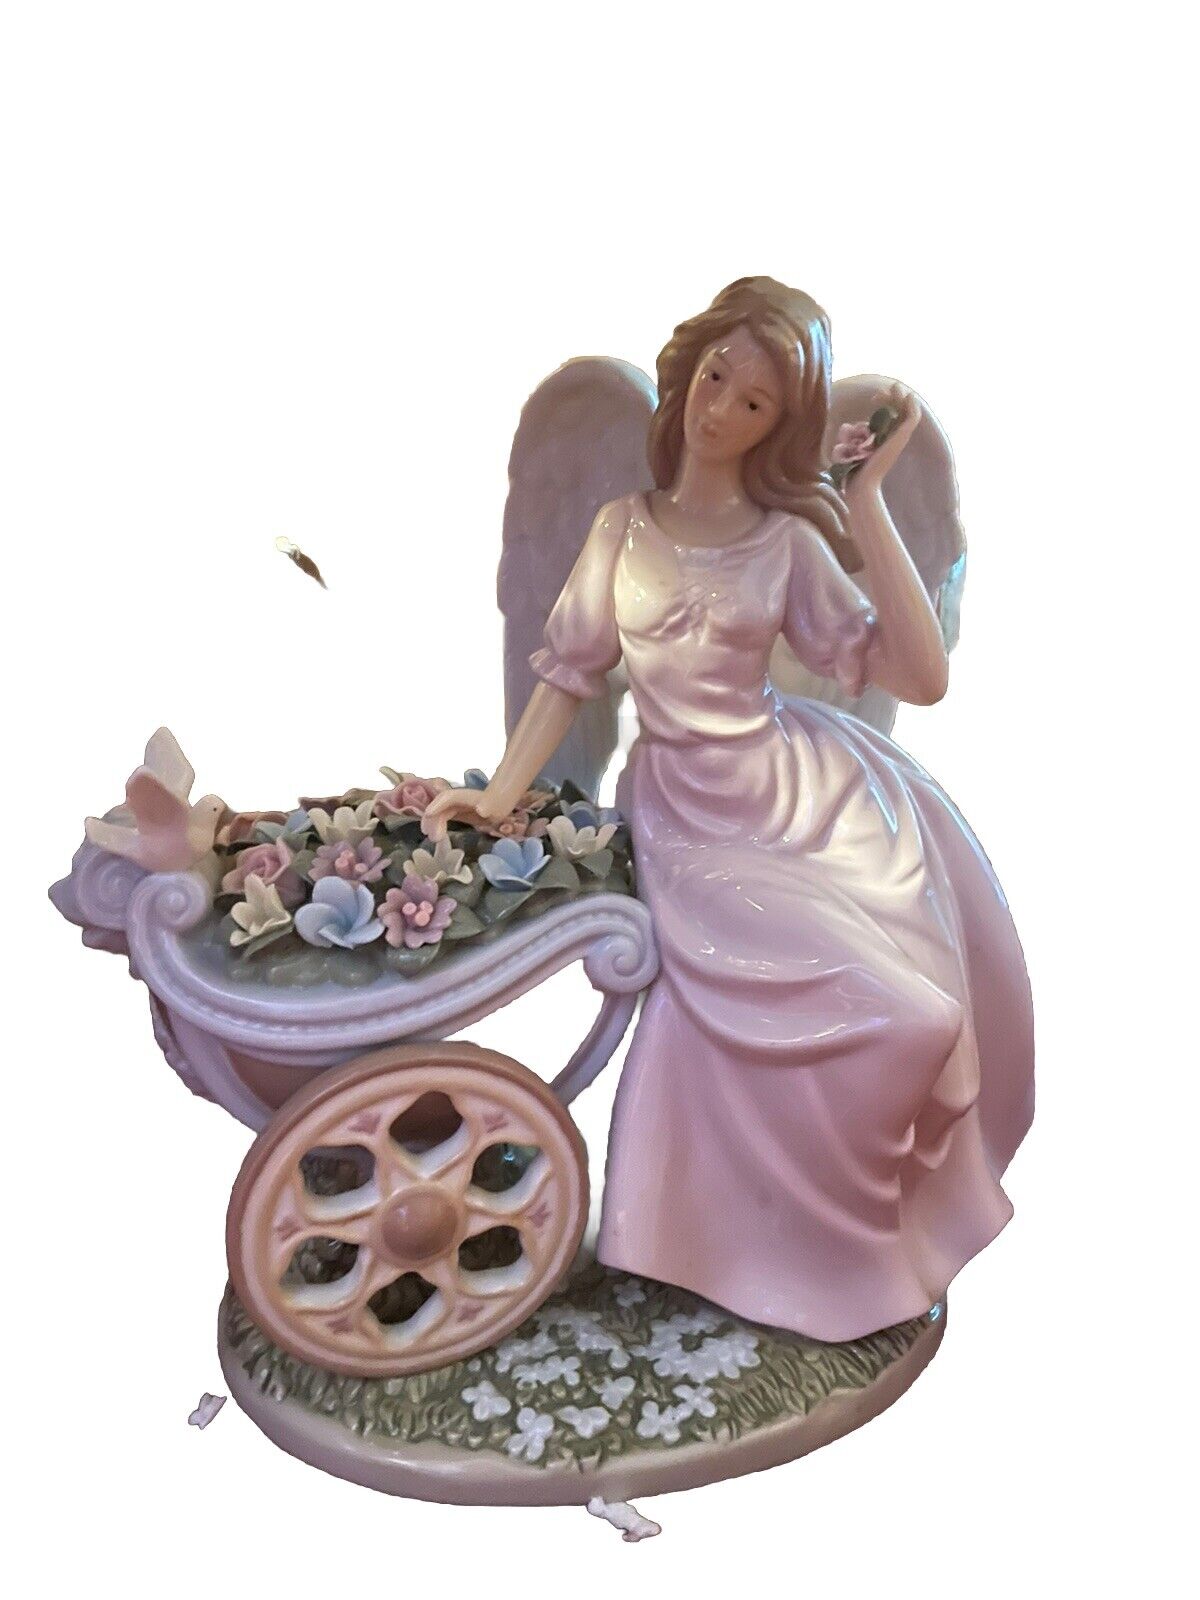 Vintage O'Well large Porcelain Angel Figure Sitting on Flower Cart